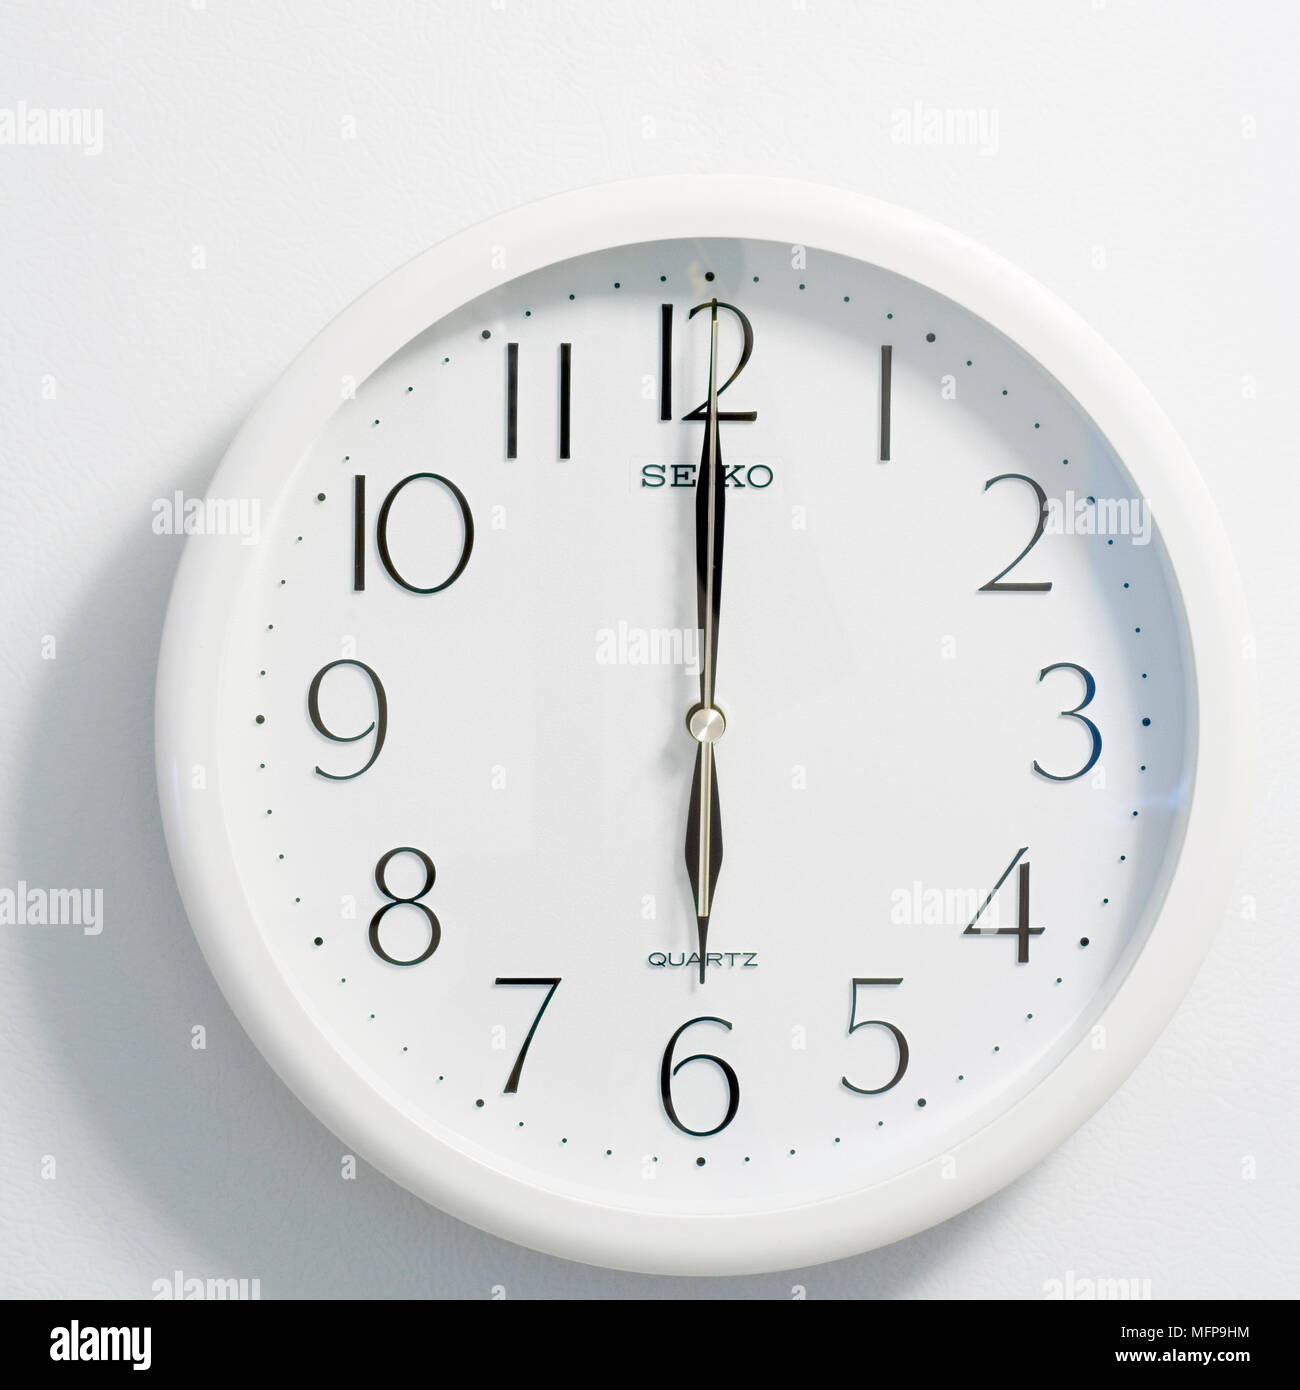 Nahaufnahme des Gesichts des modernen clock Stil, runde weiße und schwarze Zifferblatt bei sechs Uhr Stockfoto